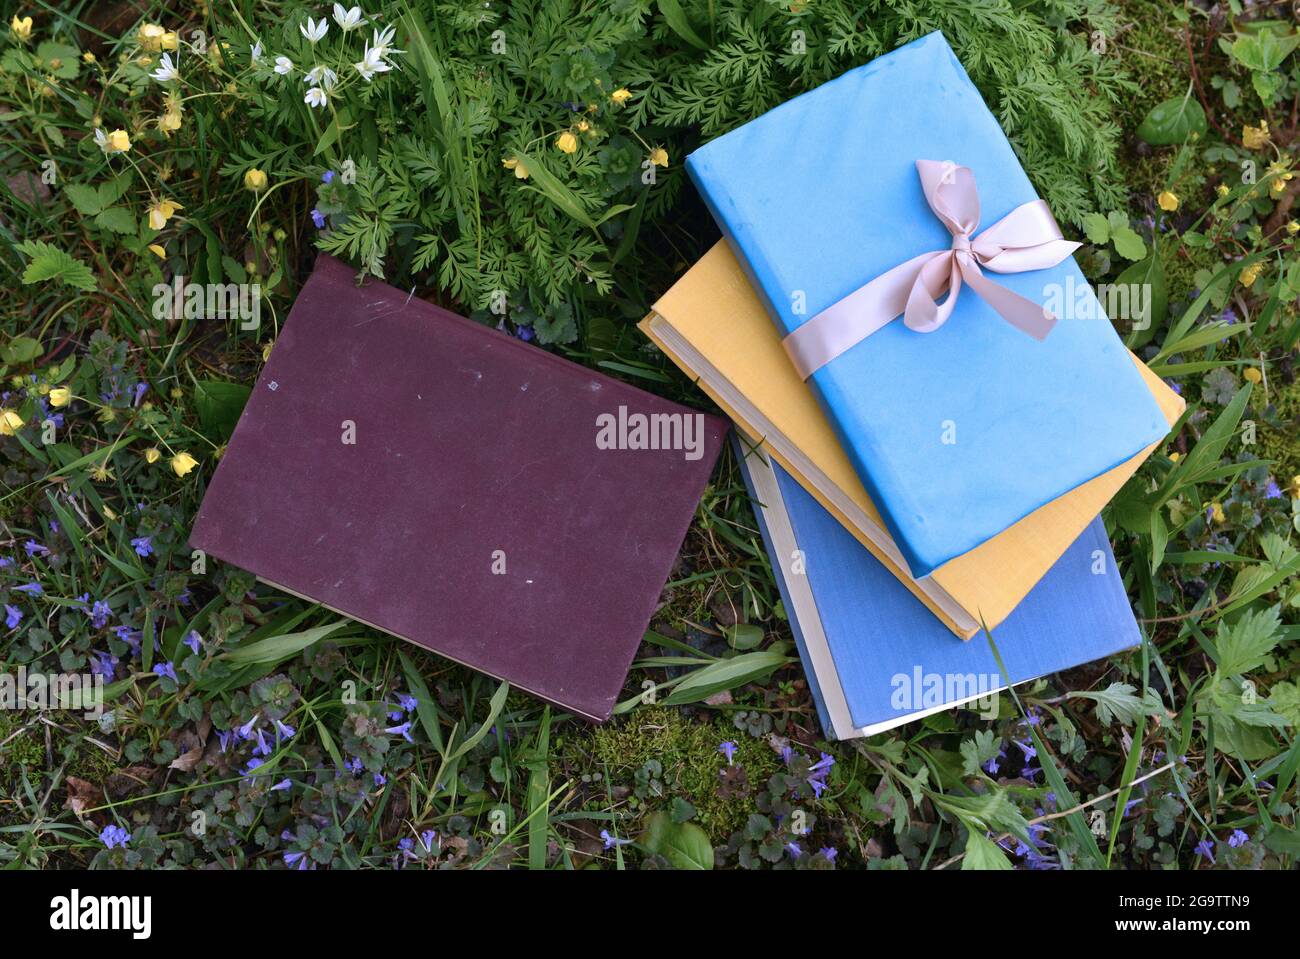 Vieux livres décorés avec des couvertures colorées sur pelouse verte à l'extérieur. Vintage romantique et concept éducatif Banque D'Images